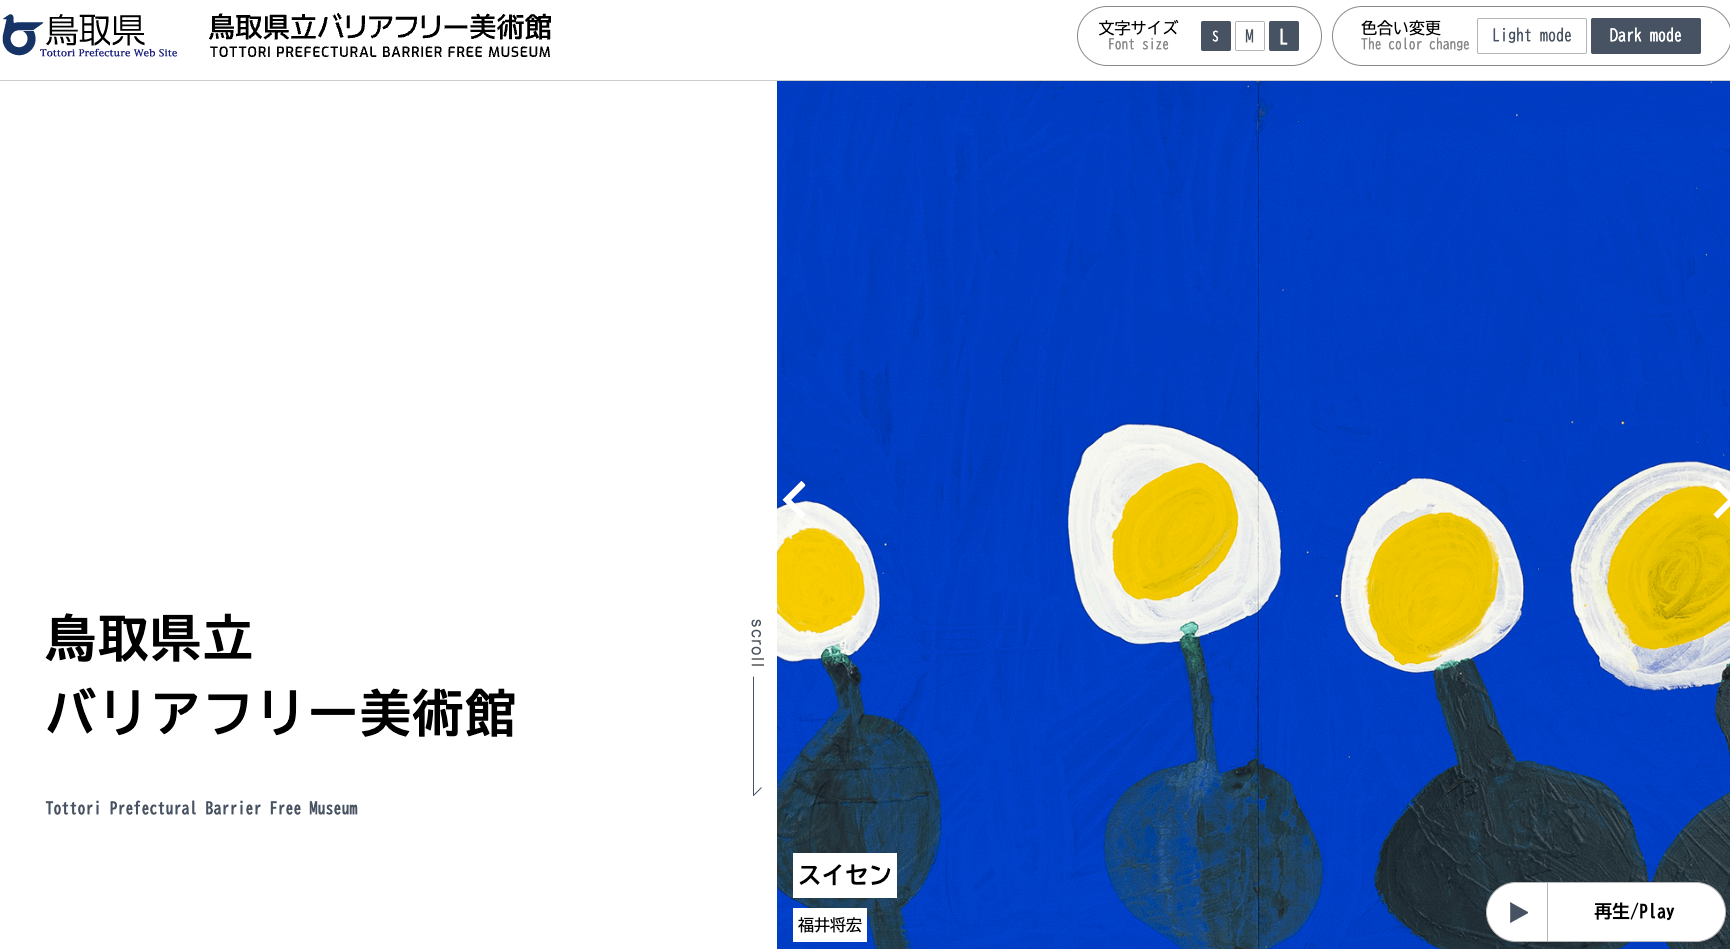 鳥取県立バリアフリー美術館 公式ホームページ